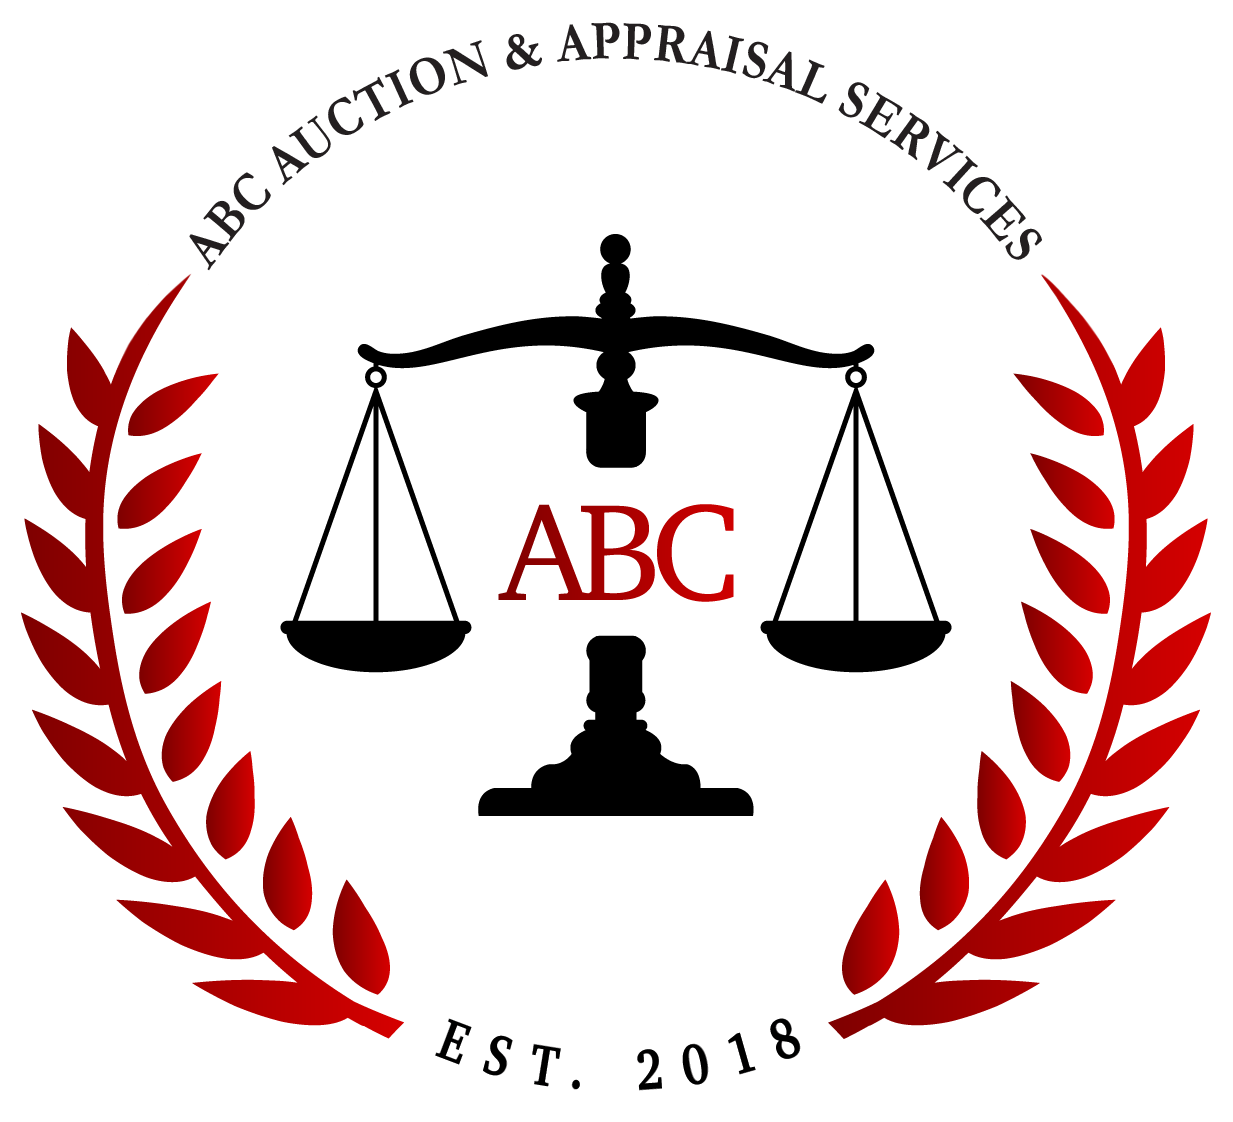 ABC Auction & Appraisal Services